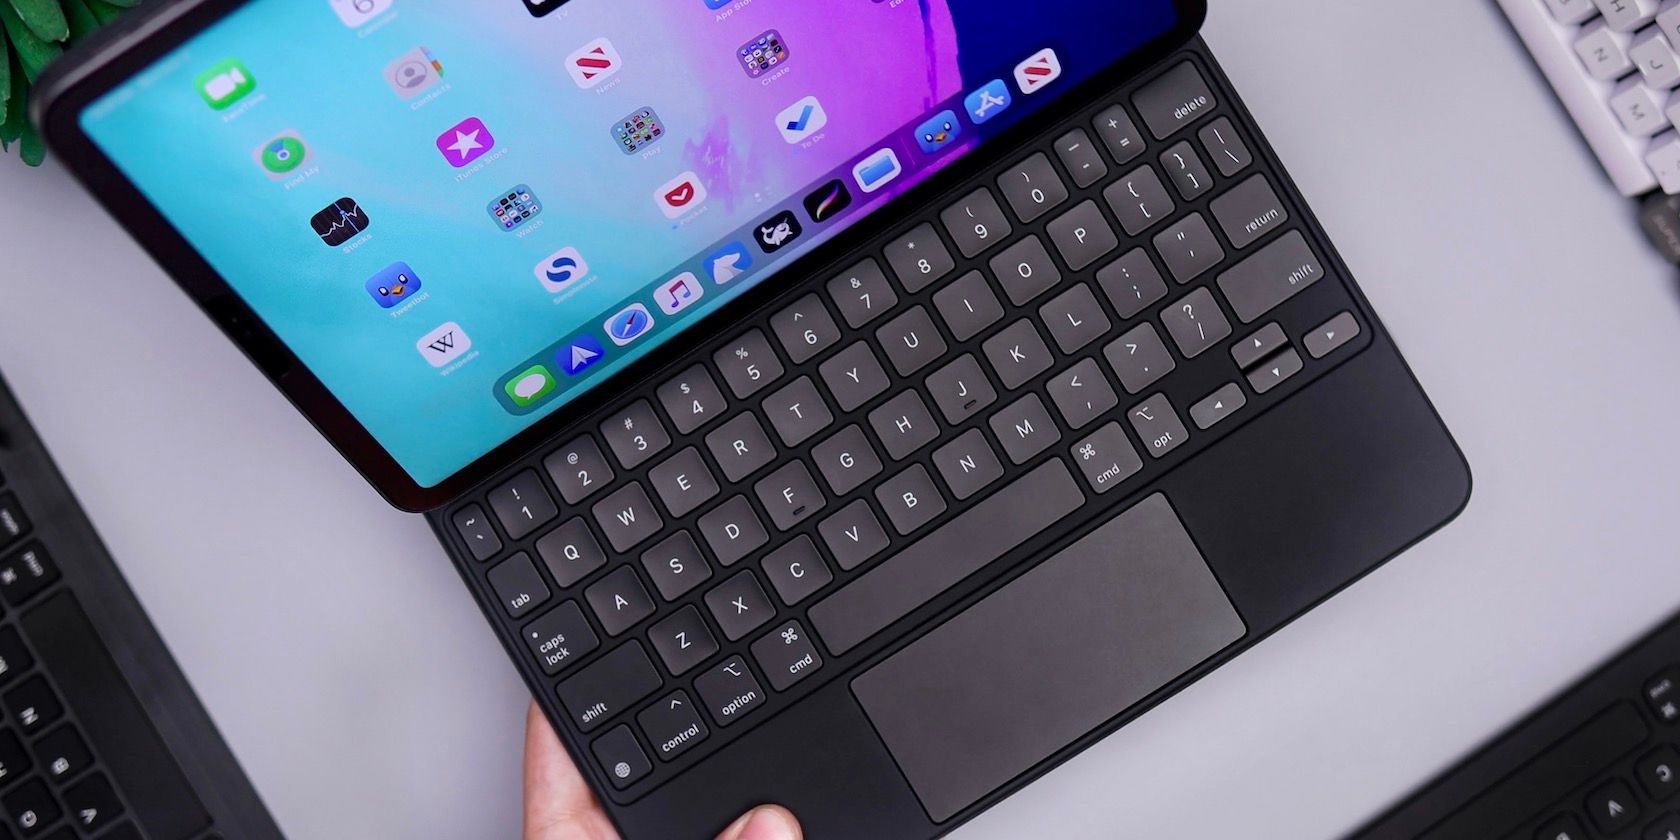 iPad in Magic Keyboard case with trackpad.